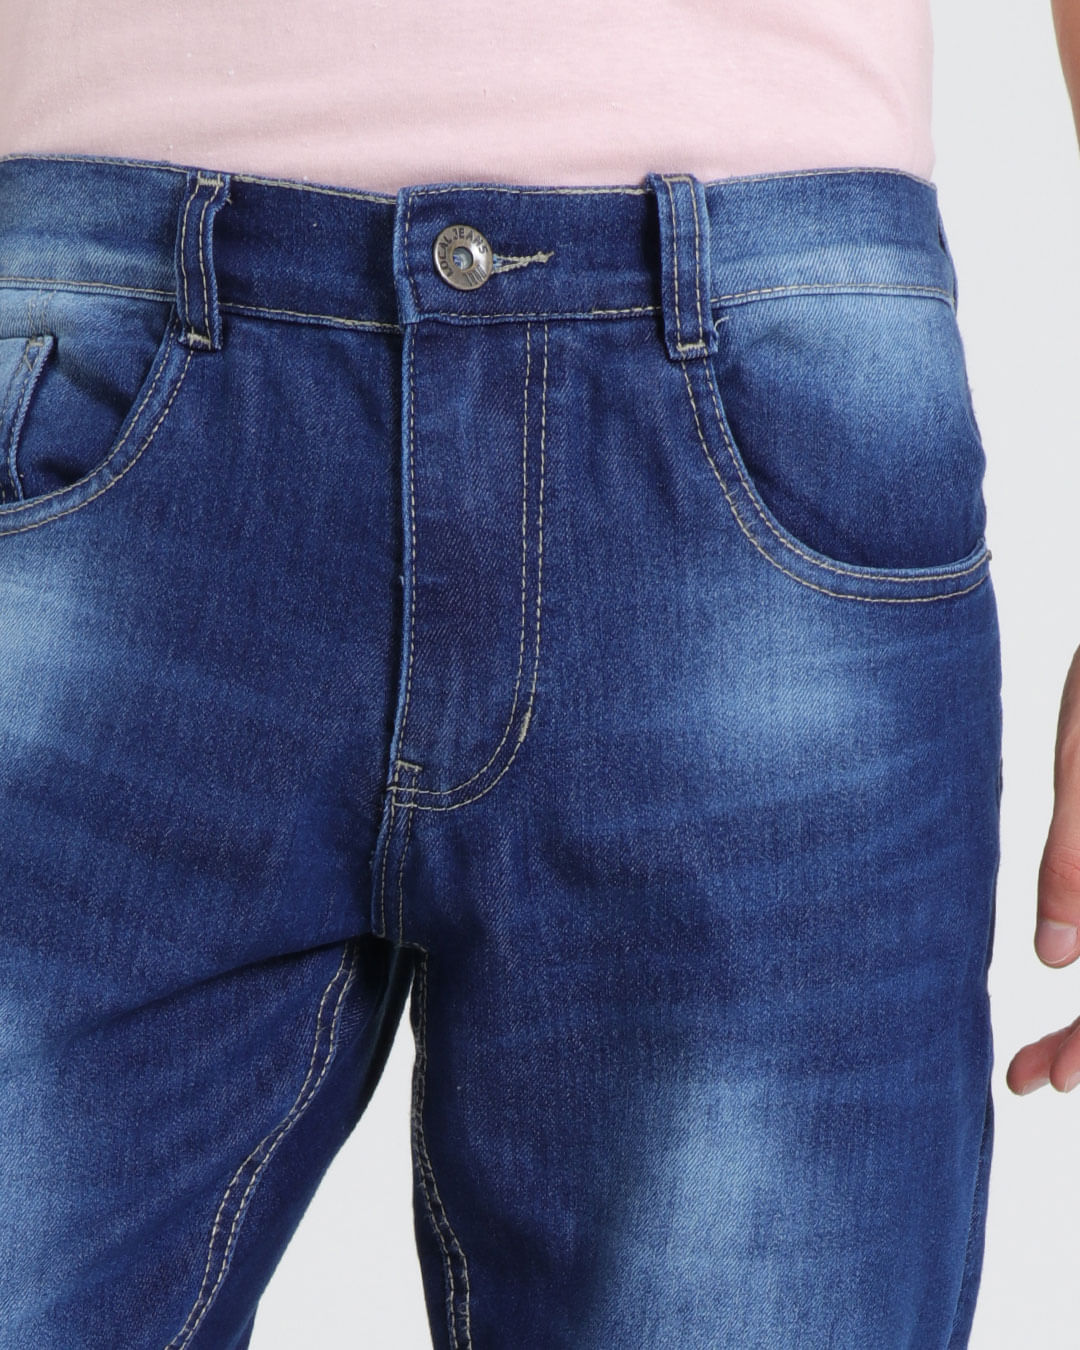 Calca-Jeans-Masculina-Reta-Elastano-Azul-Medio